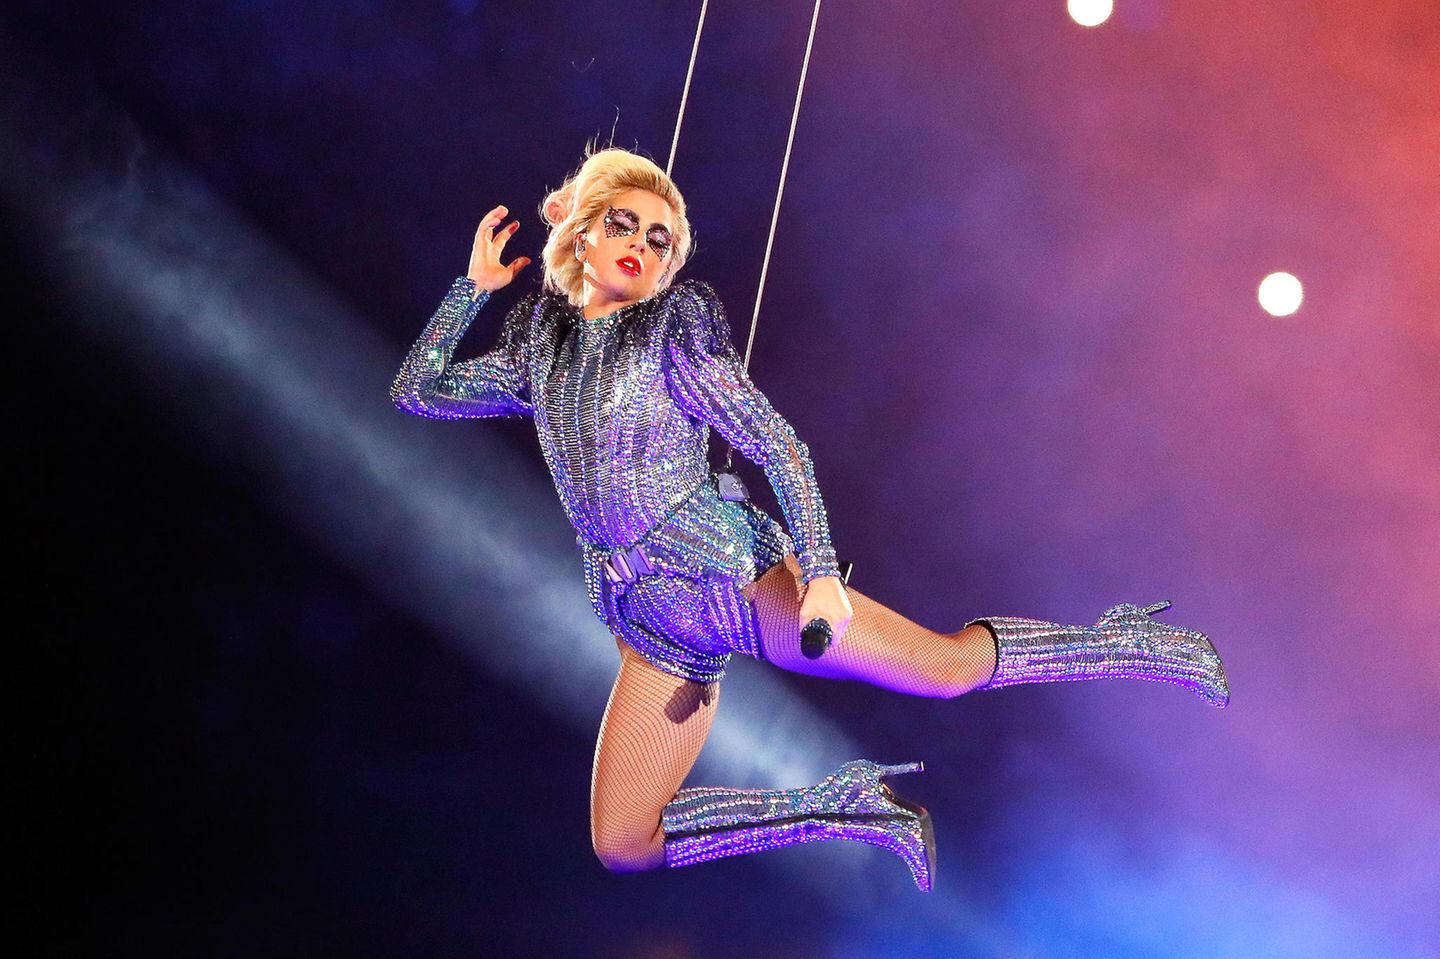 2017  Houston hatte beim 51. Super Bowl kein Problem, sondern eine Weltklasse-Performance von Lady Gaga im blau-lilafarbenen Glitzerlook.